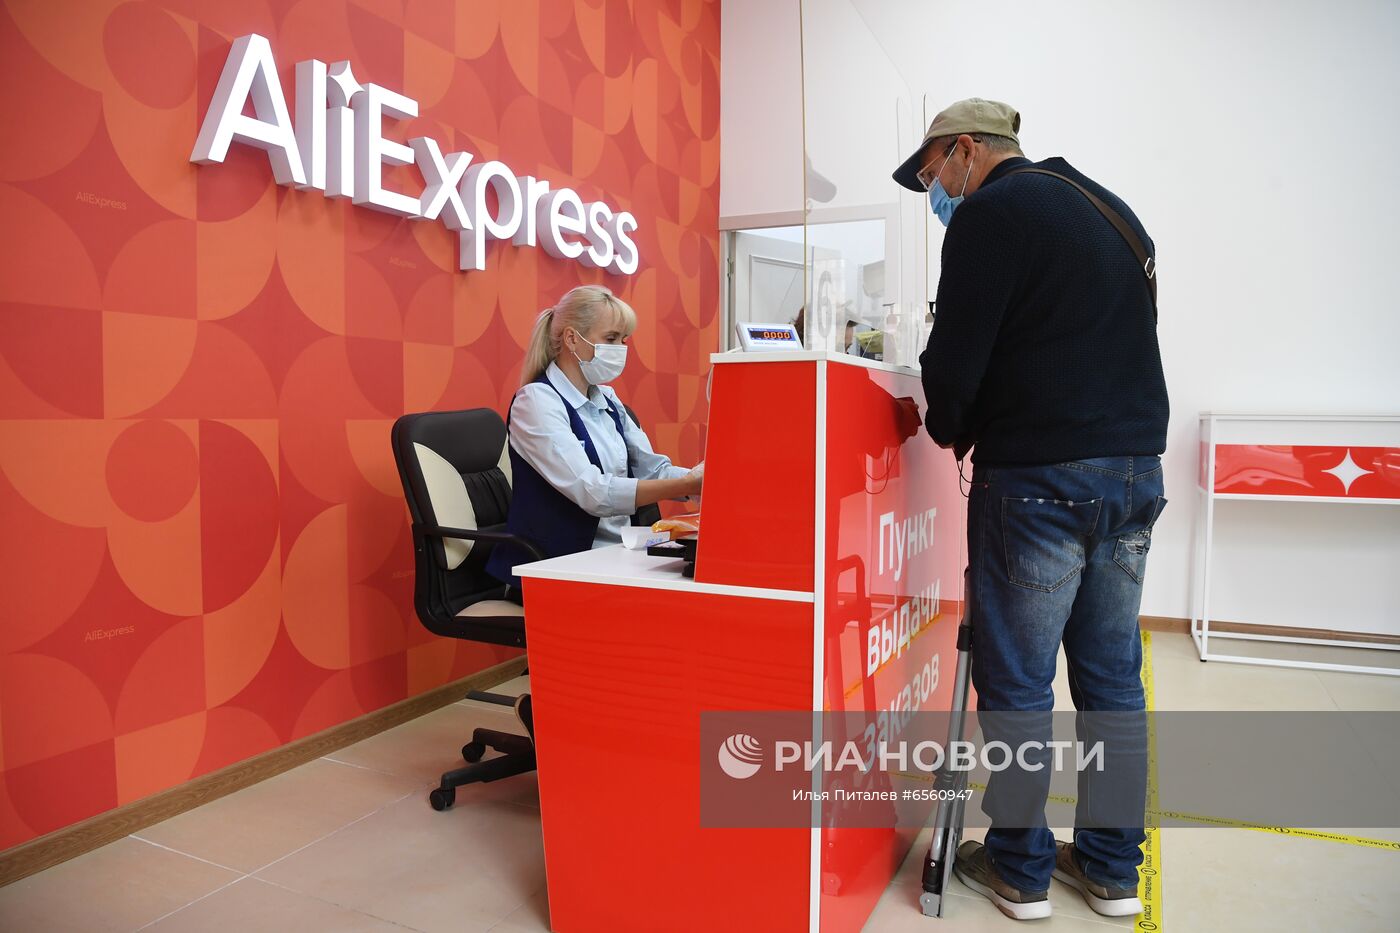 Открытие пункта выдачи товаров AliExpress в отделении Почты России | РИА  Новости Медиабанк